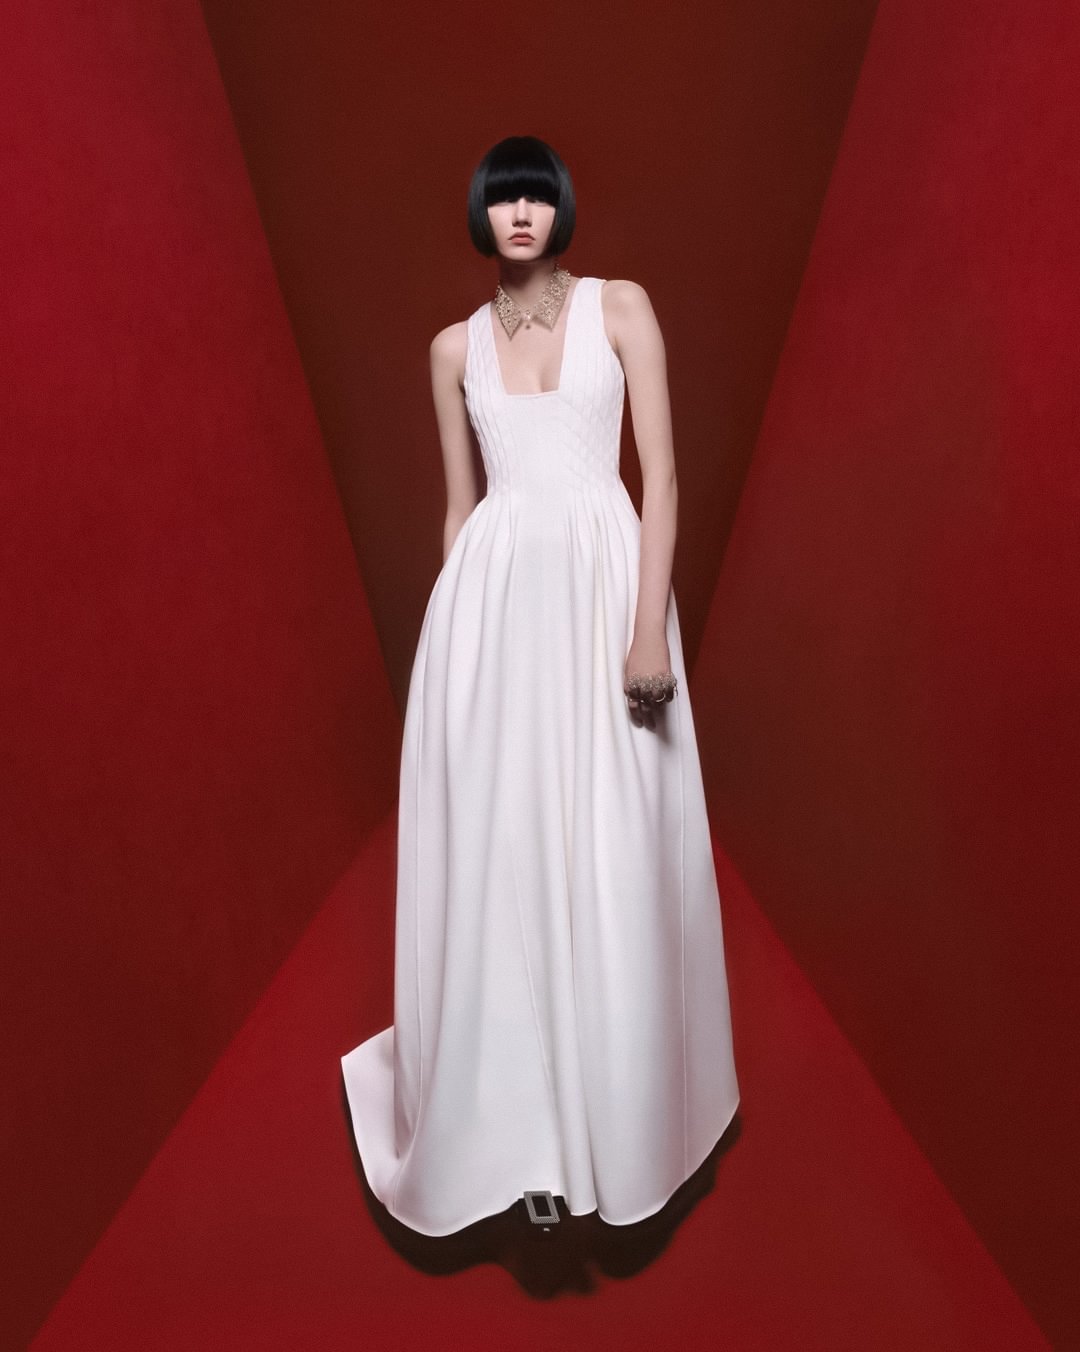 Dior-Fall-2022-Campaign-by Grigitte-Niedermair (20).jpg